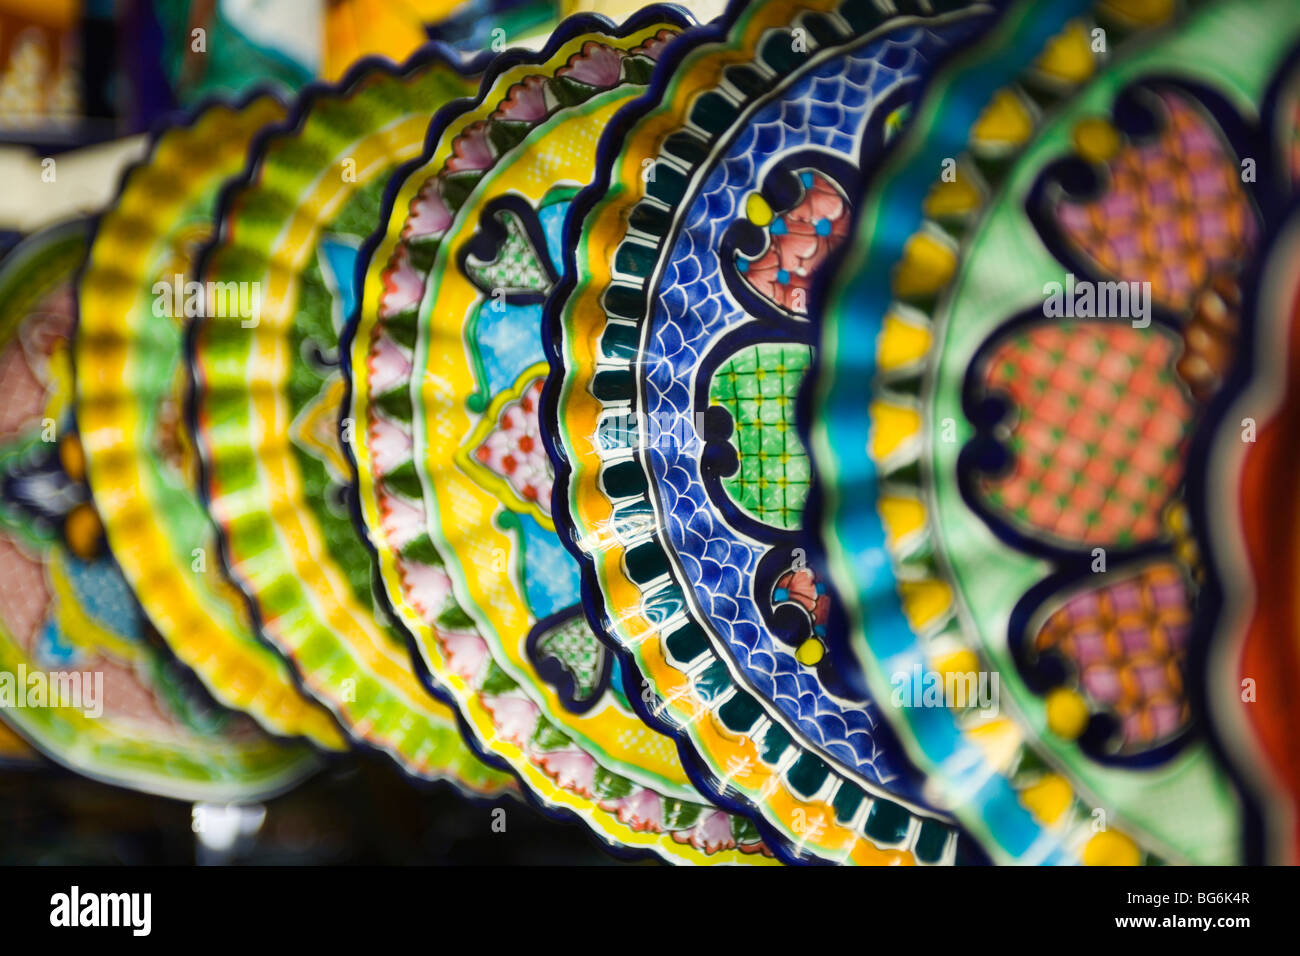 Ceramiche messicano nel mercato aperto, Acapulco Messico Foto Stock